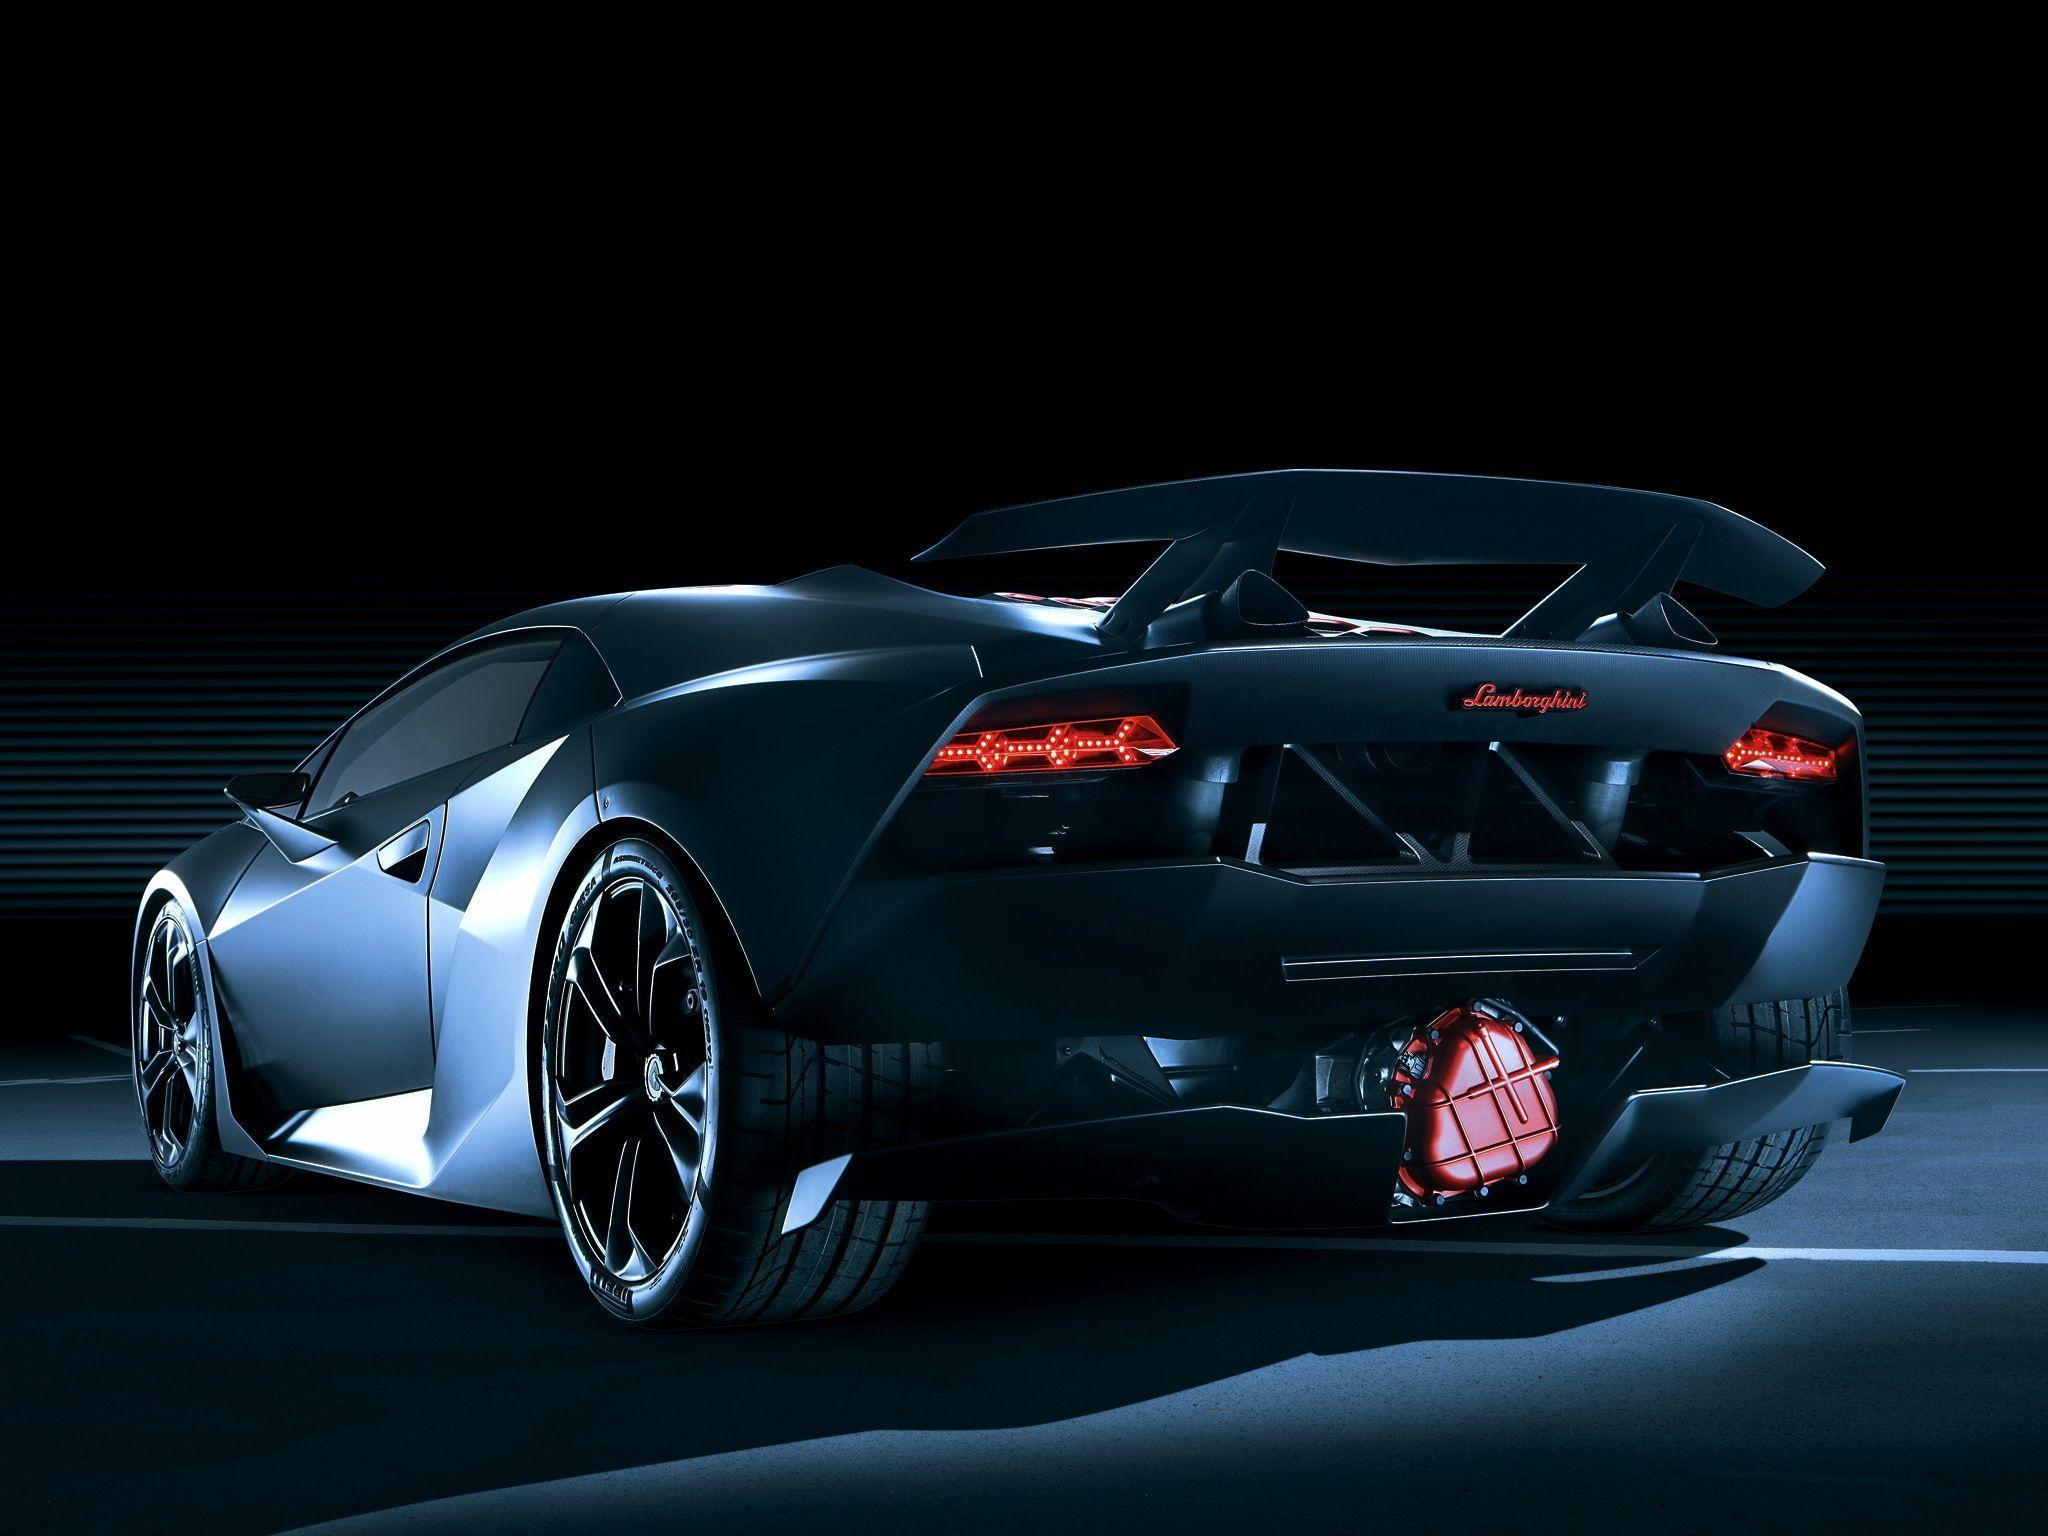 Lamborghini Sesto Elemento HD Wallpaper. Background